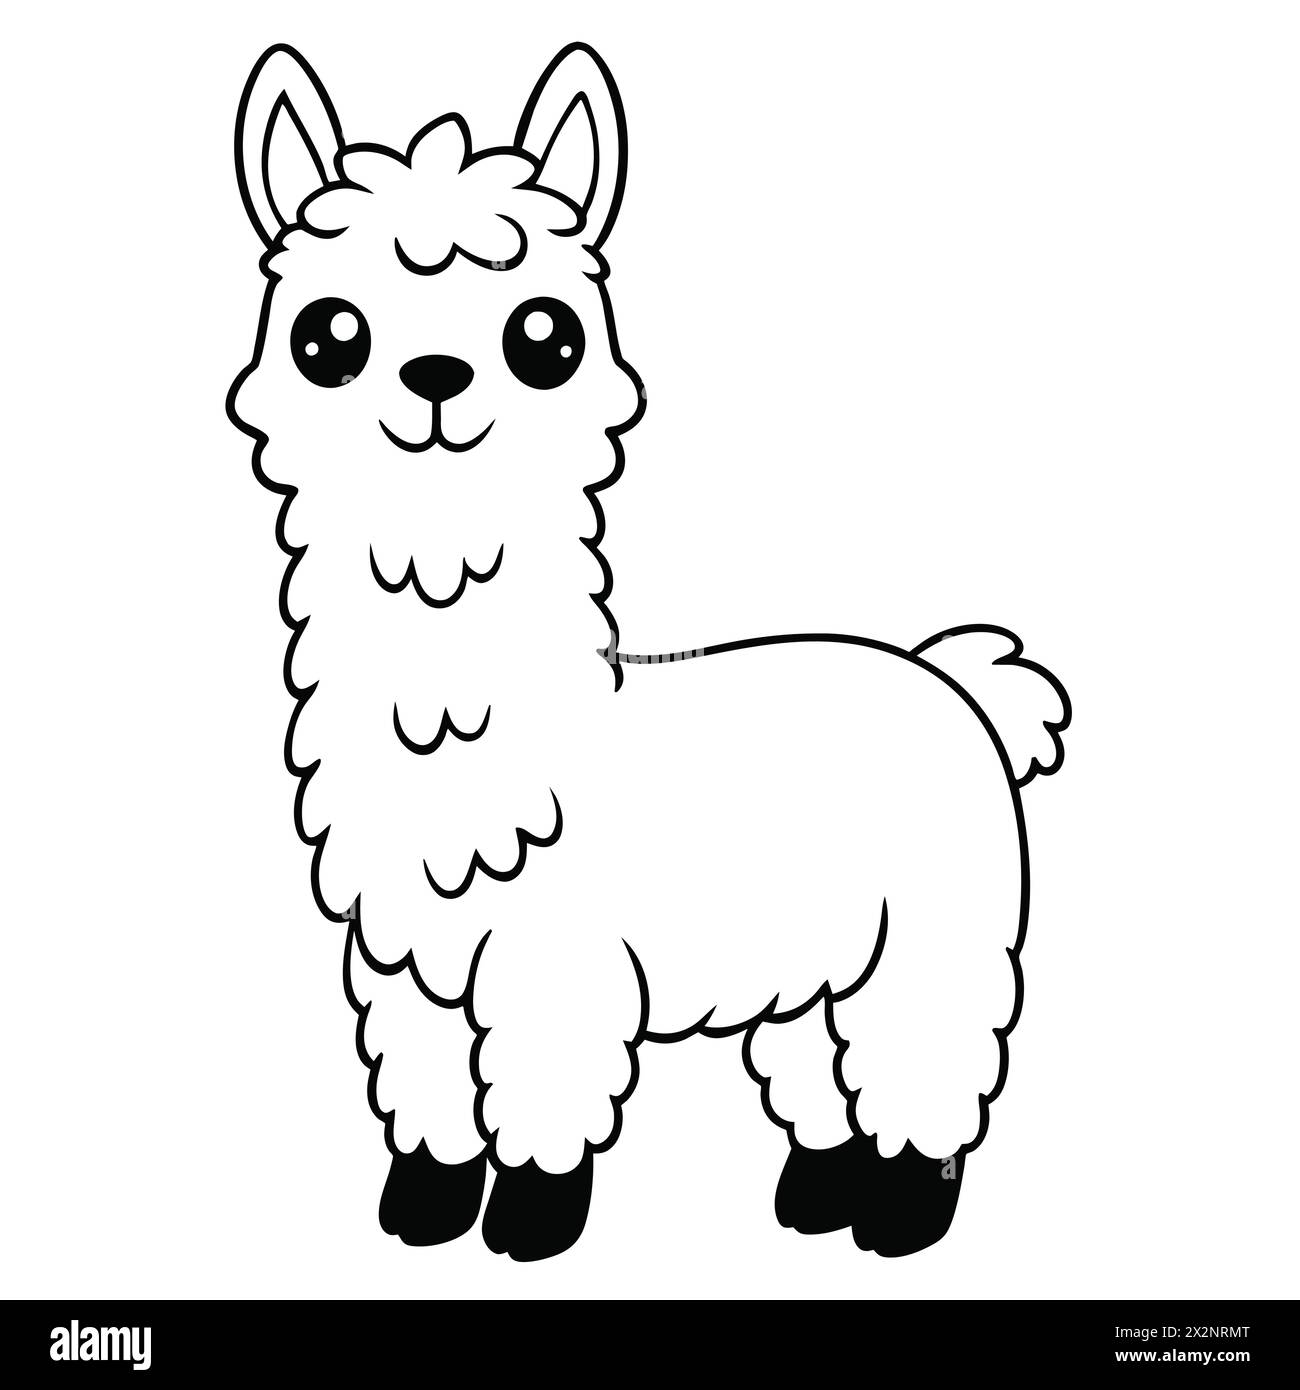 Avventura andina: Adorabili Llamas, perfetti per libri per bambini carte inviti loghi Web Design T-shirt biglietti di auguri cartoleria imballaggio tatuaggio Illustrazione Vettoriale